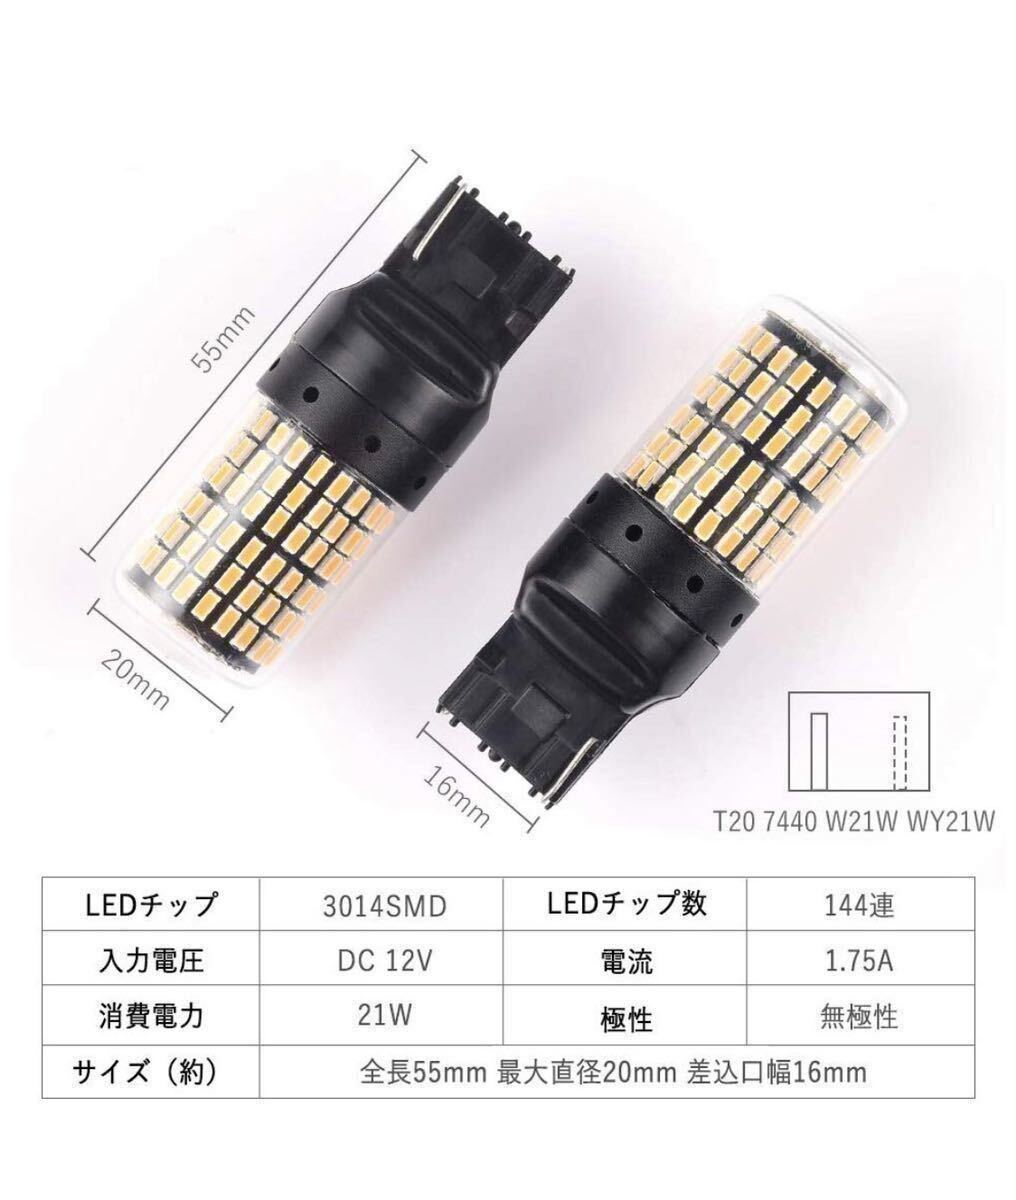 新製品 LED T20 ウインカー オレンジ色 ハイフラ防止抵抗内蔵 ピンチ部違い対応 4個セット アンバー 12v LEDバルブ _画像5